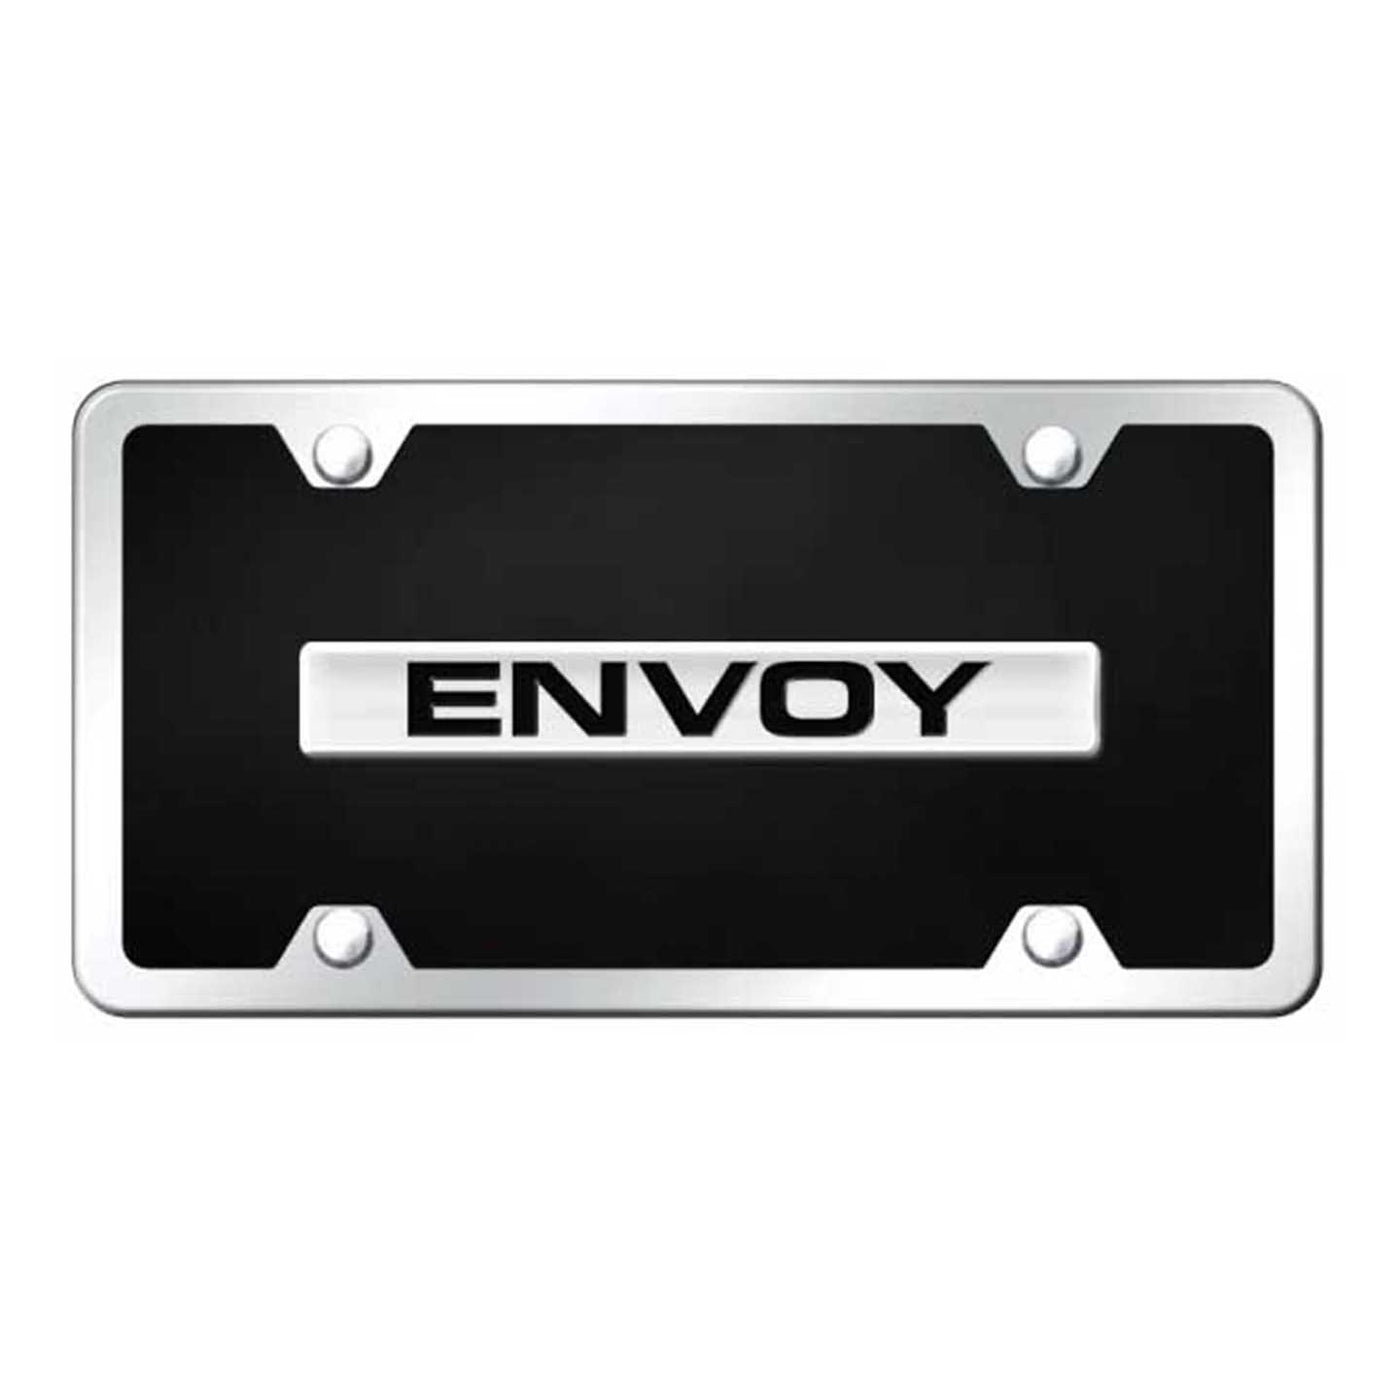 Envoy Name Acrylic Kit - Chrome on Black